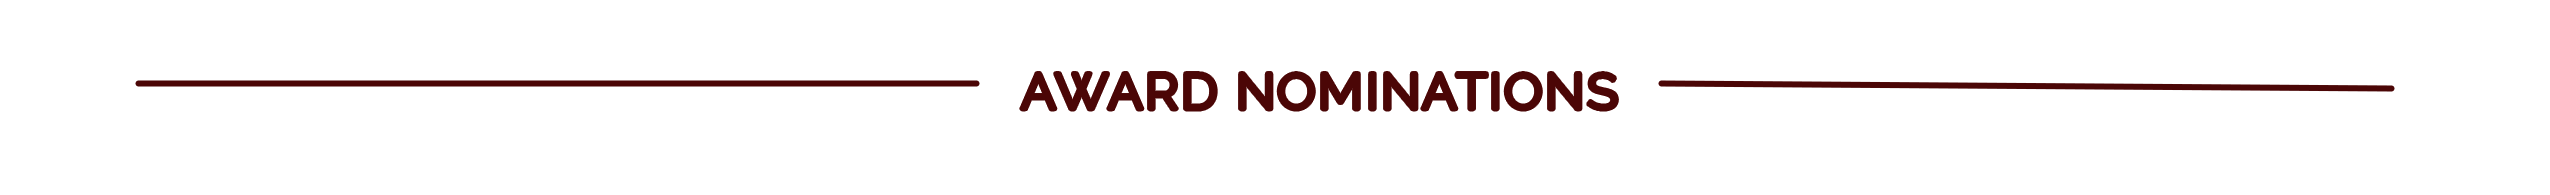 Award Nominations